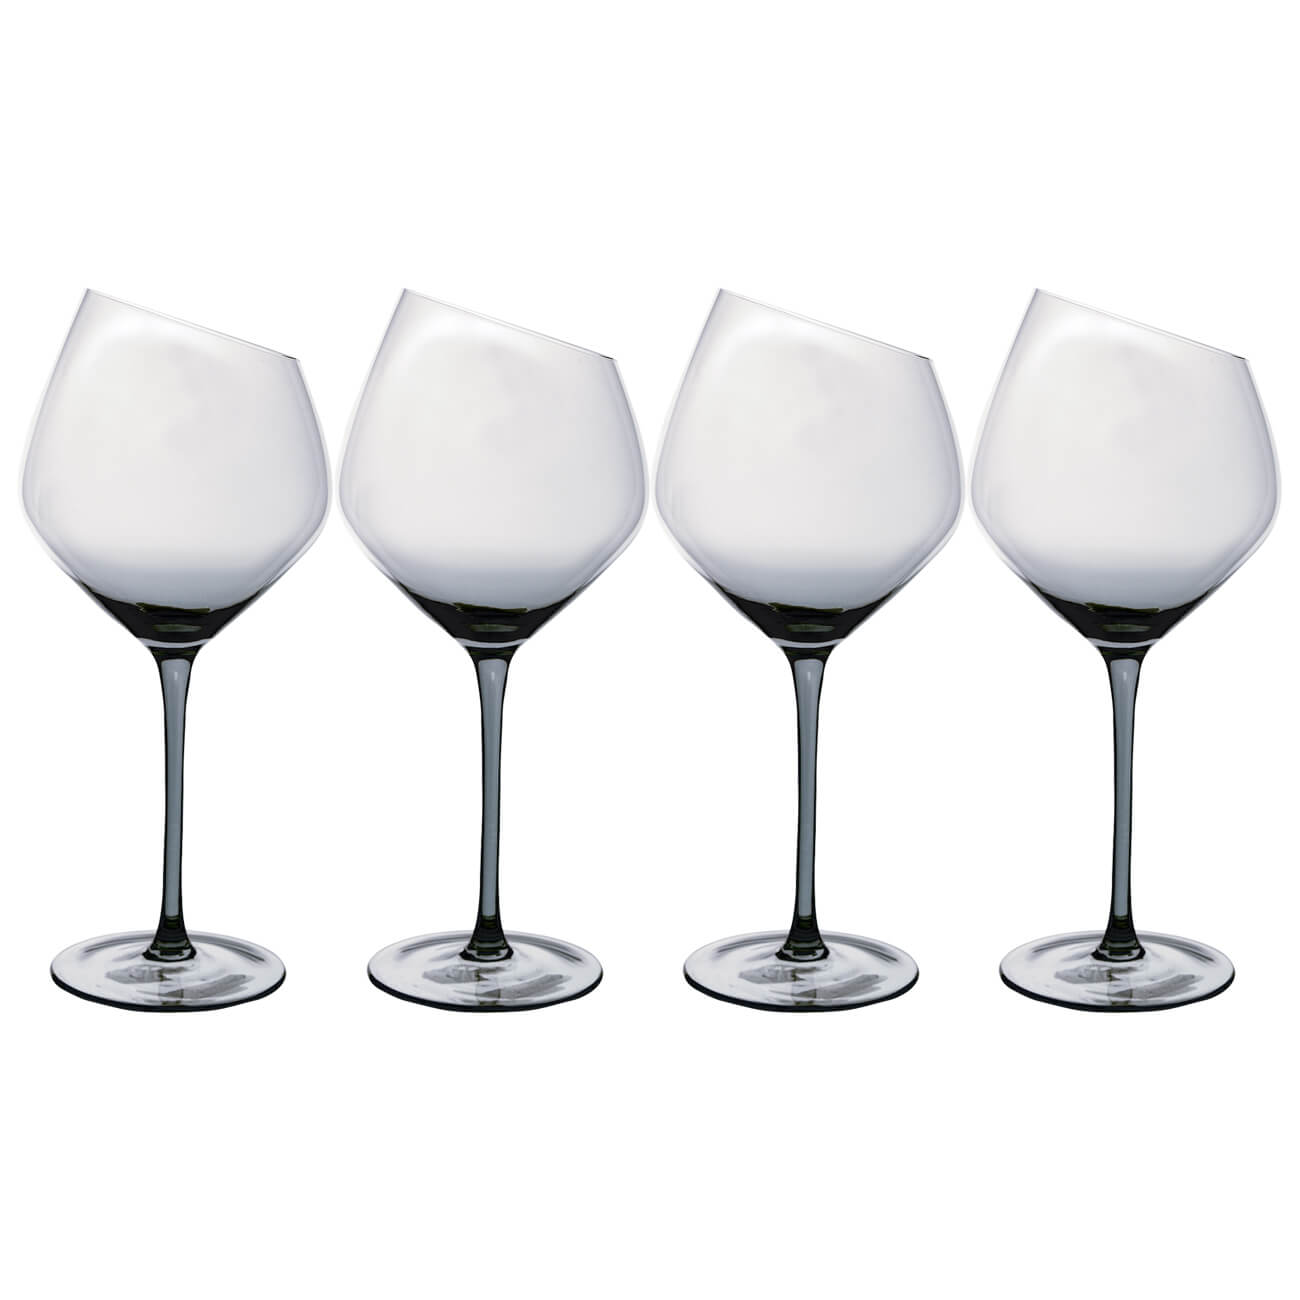 Бокал для красного вина, 560 мл, 4 шт, стекло, серый, Charm L Color бокал для белого вина 460 мл 4 шт стекло перламутр charm l polar